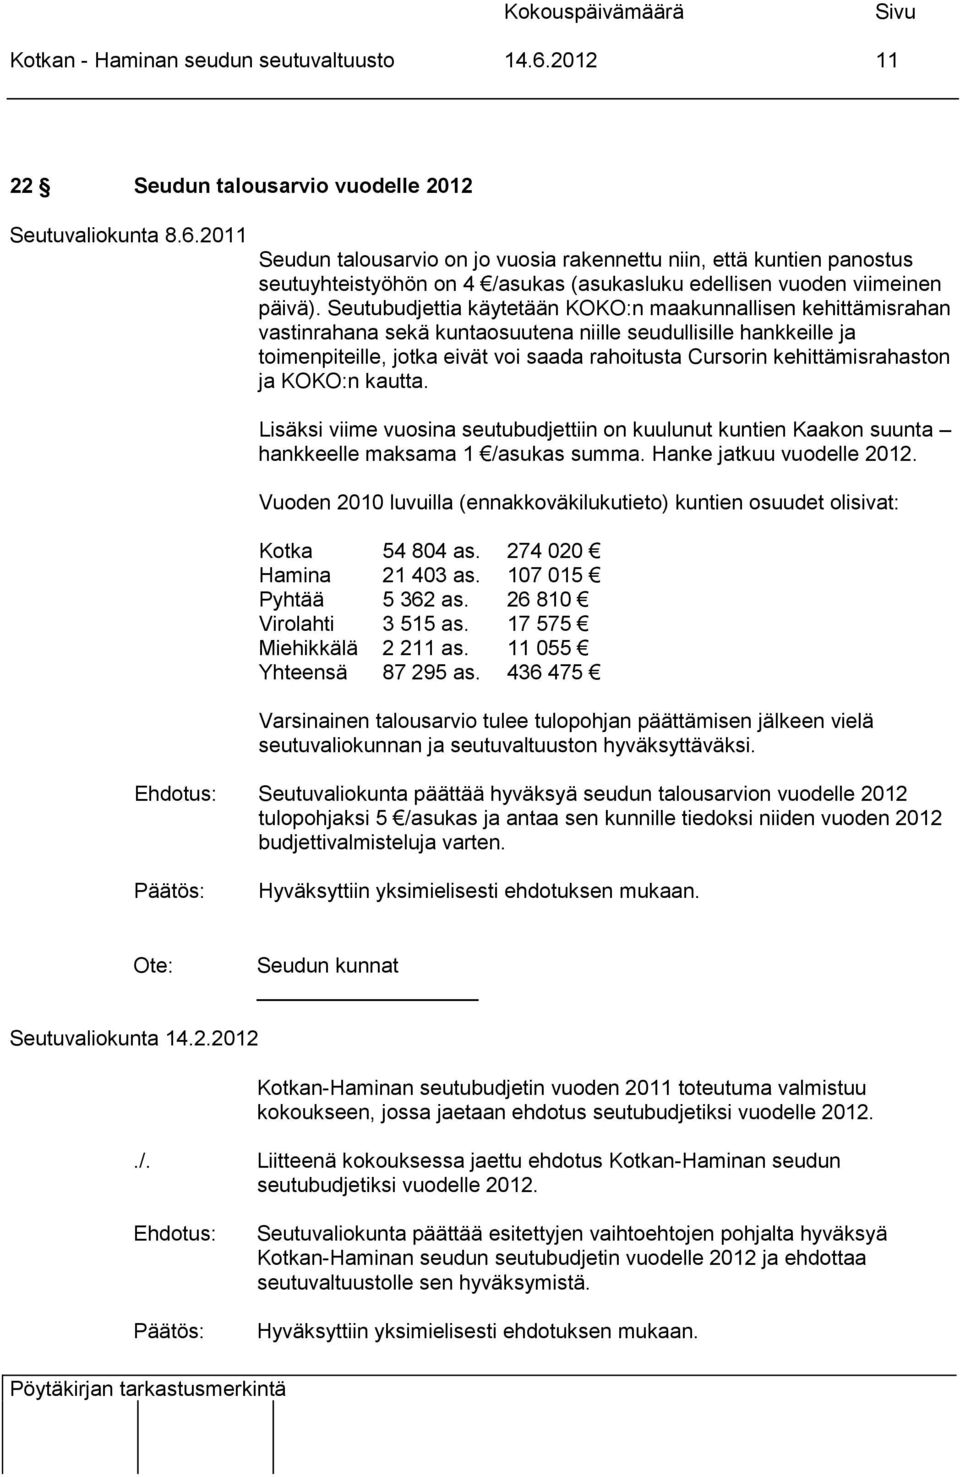 kehittämisrahaston ja KOKO:n kautta. Lisäksi viime vuosina seutubudjettiin on kuulunut kuntien Kaakon suunta hankkeelle maksama 1 /asukas summa. Hanke jatkuu vuodelle 2012.